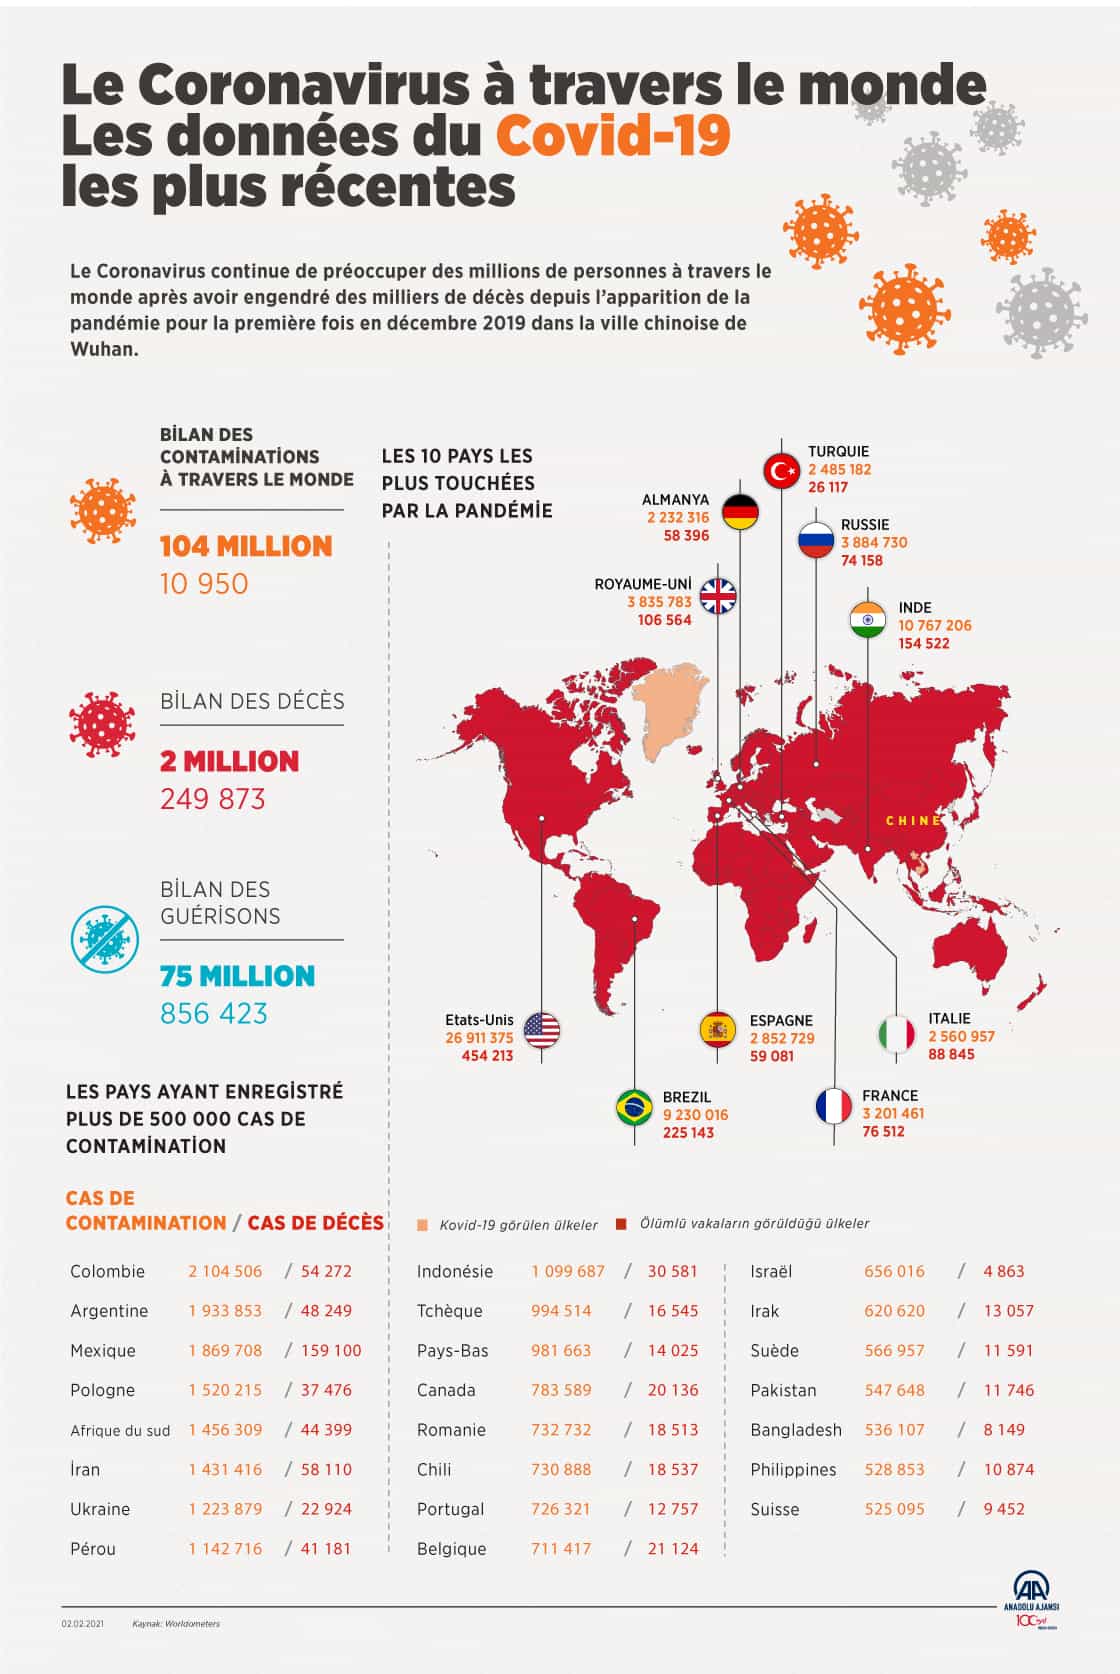 Le Coronavirus à travers le monde (infographie : Agence Anadolu, 2 février 2021).